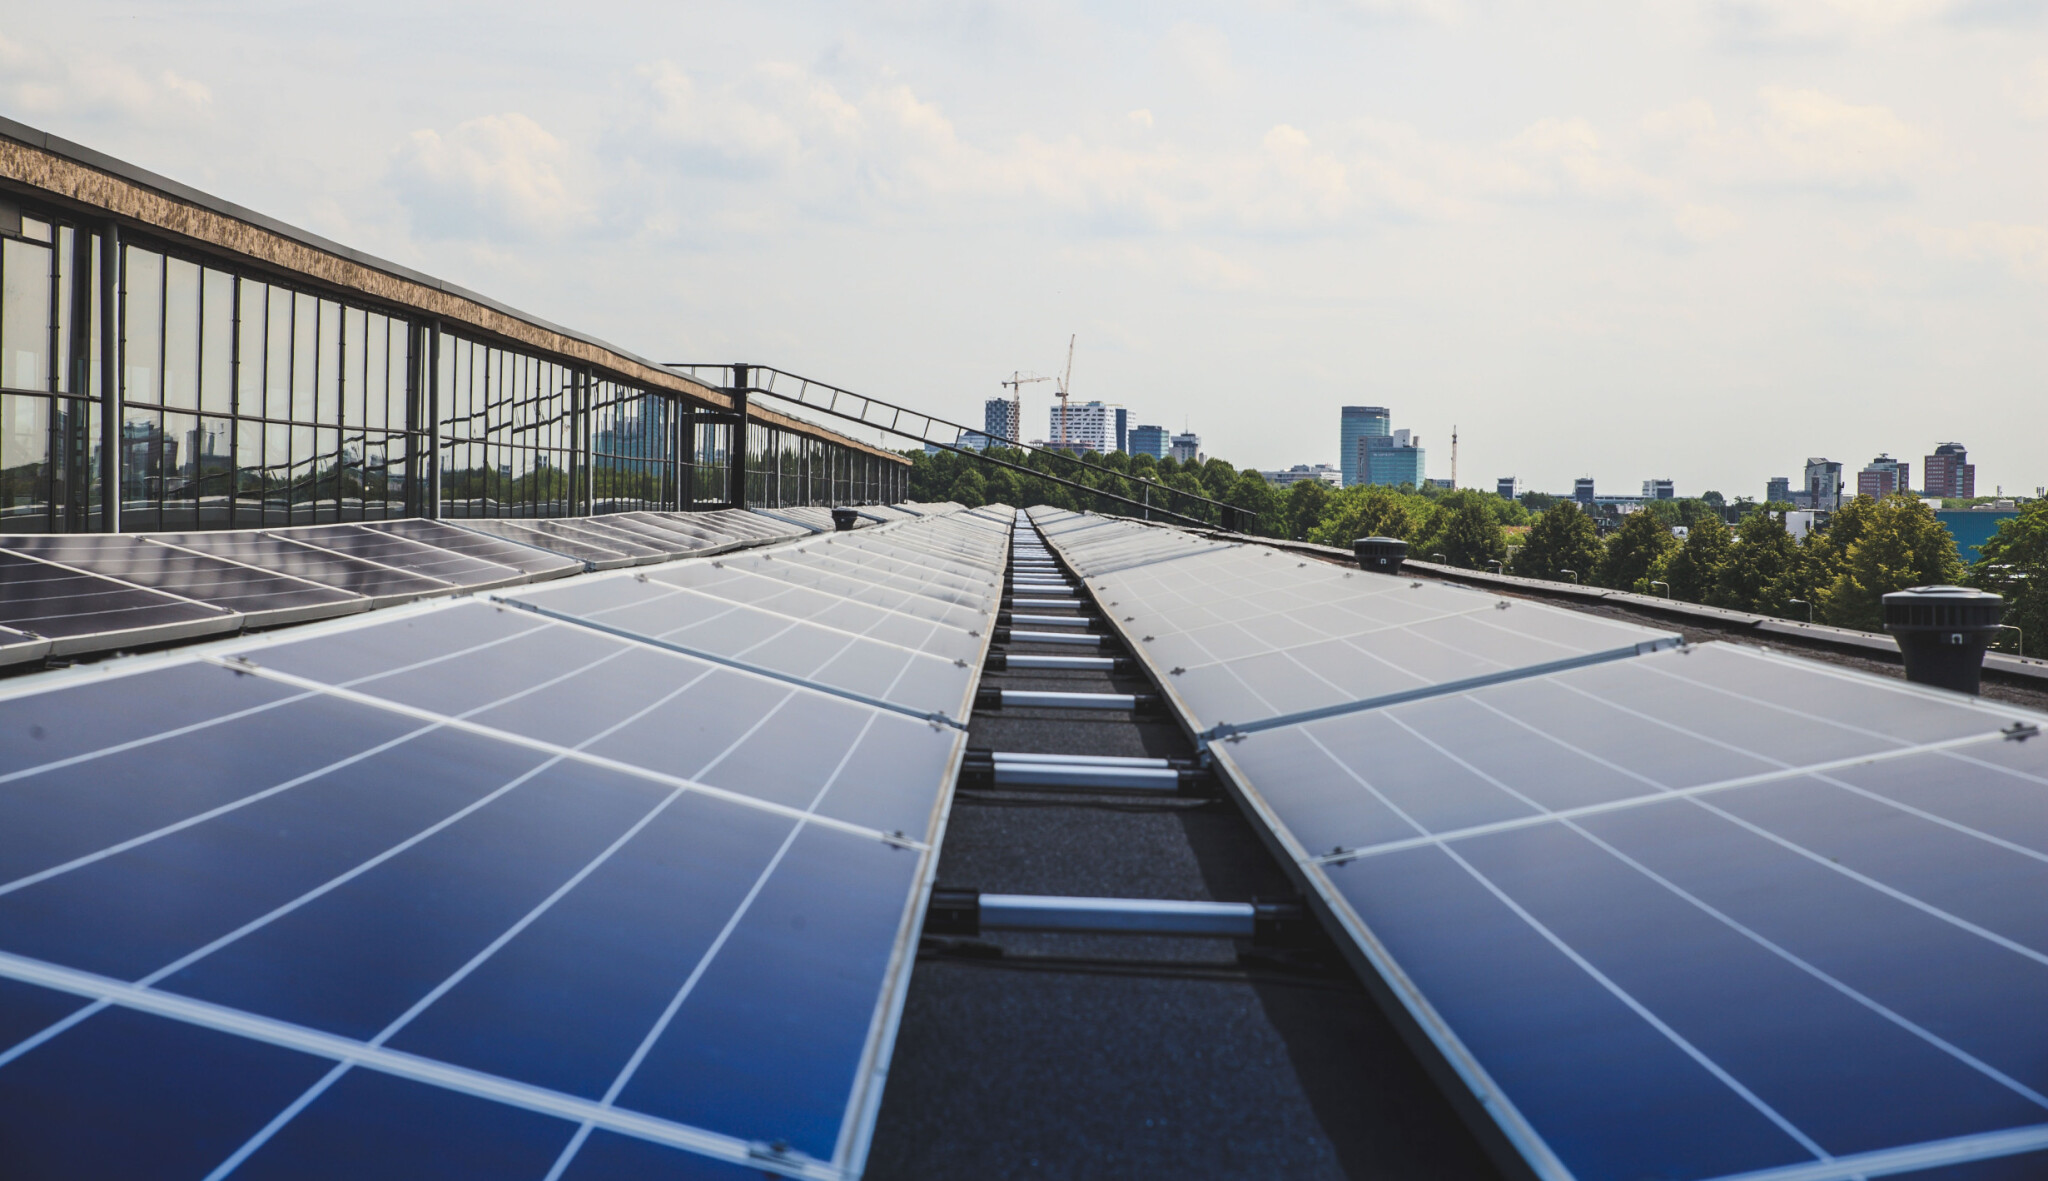 Mohou solární panely na střechách vyrobit dost elektřiny pro celý svět?